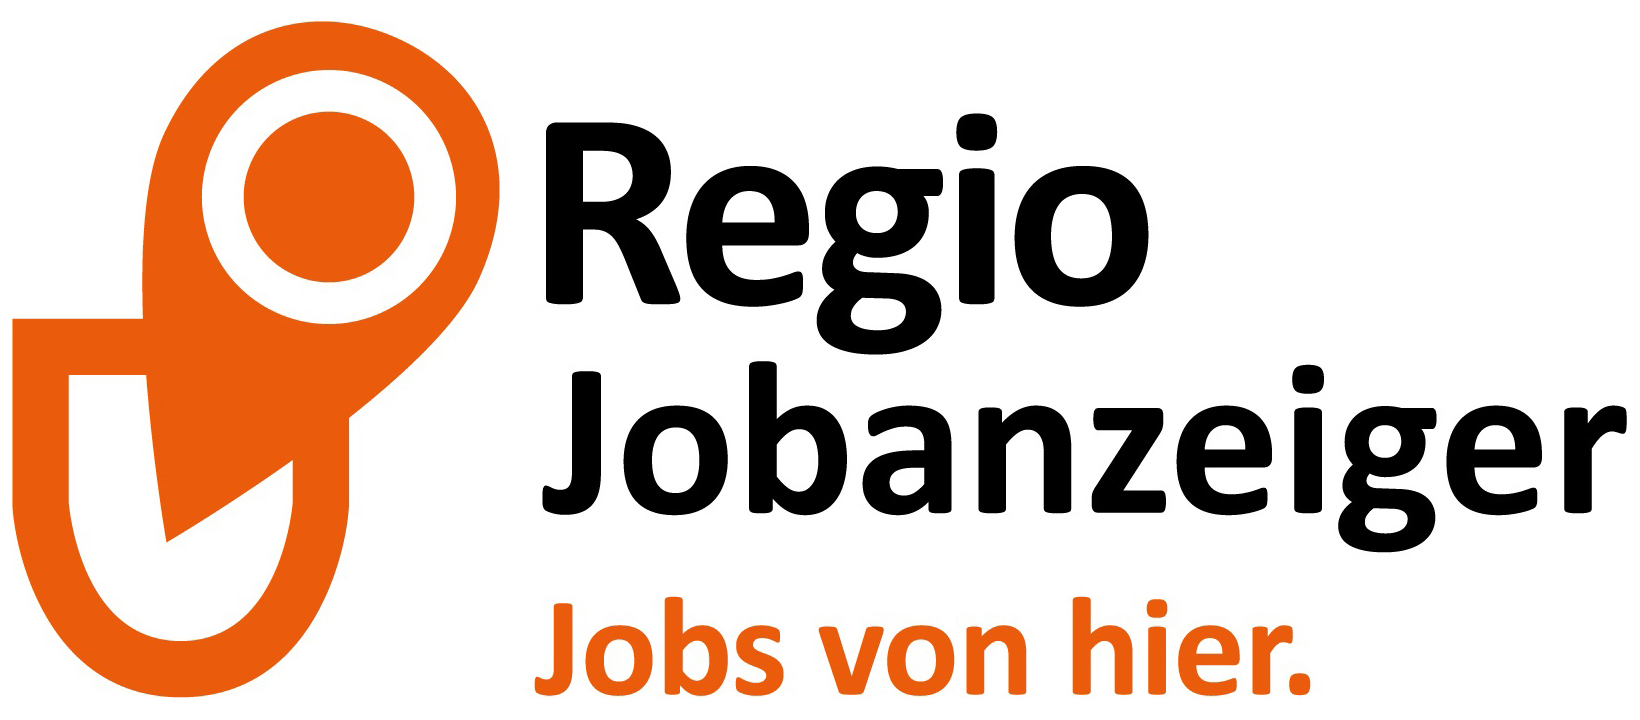 Regio Jobanzeiger_logo_claim_orange_sw_norm